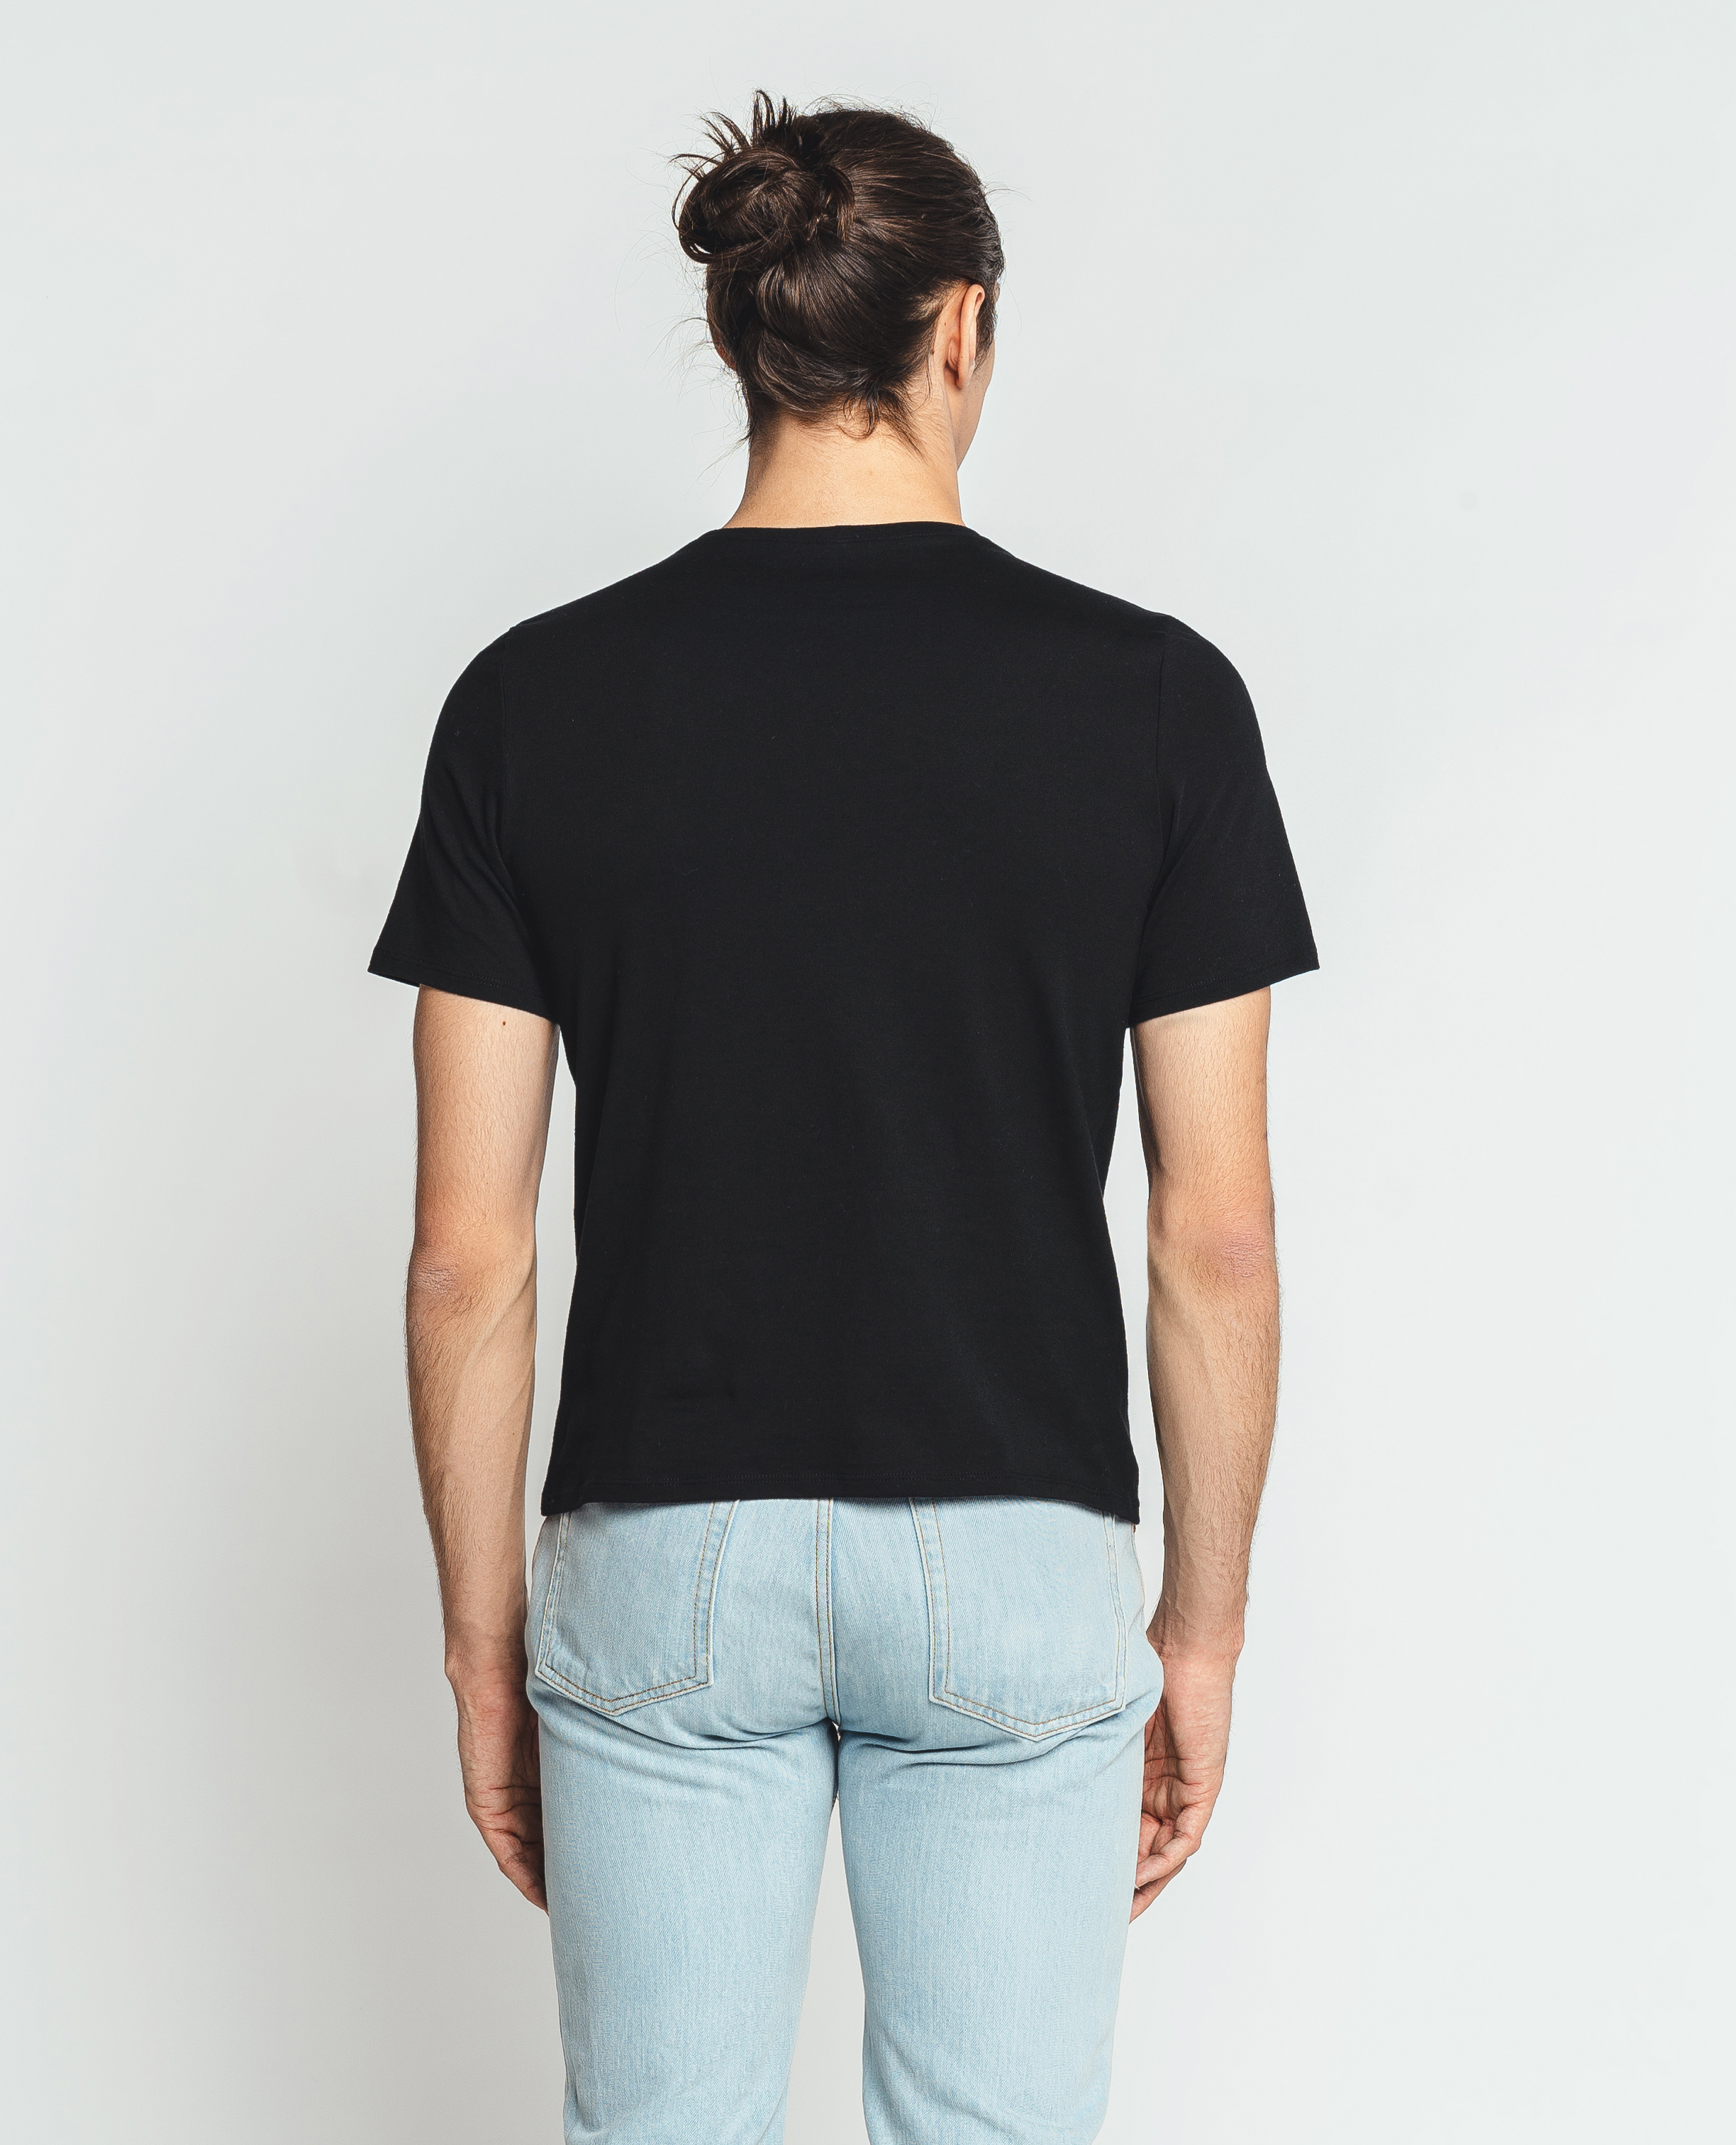 Zwart Basic Range -  T-shirt met ronde hals  - NR0